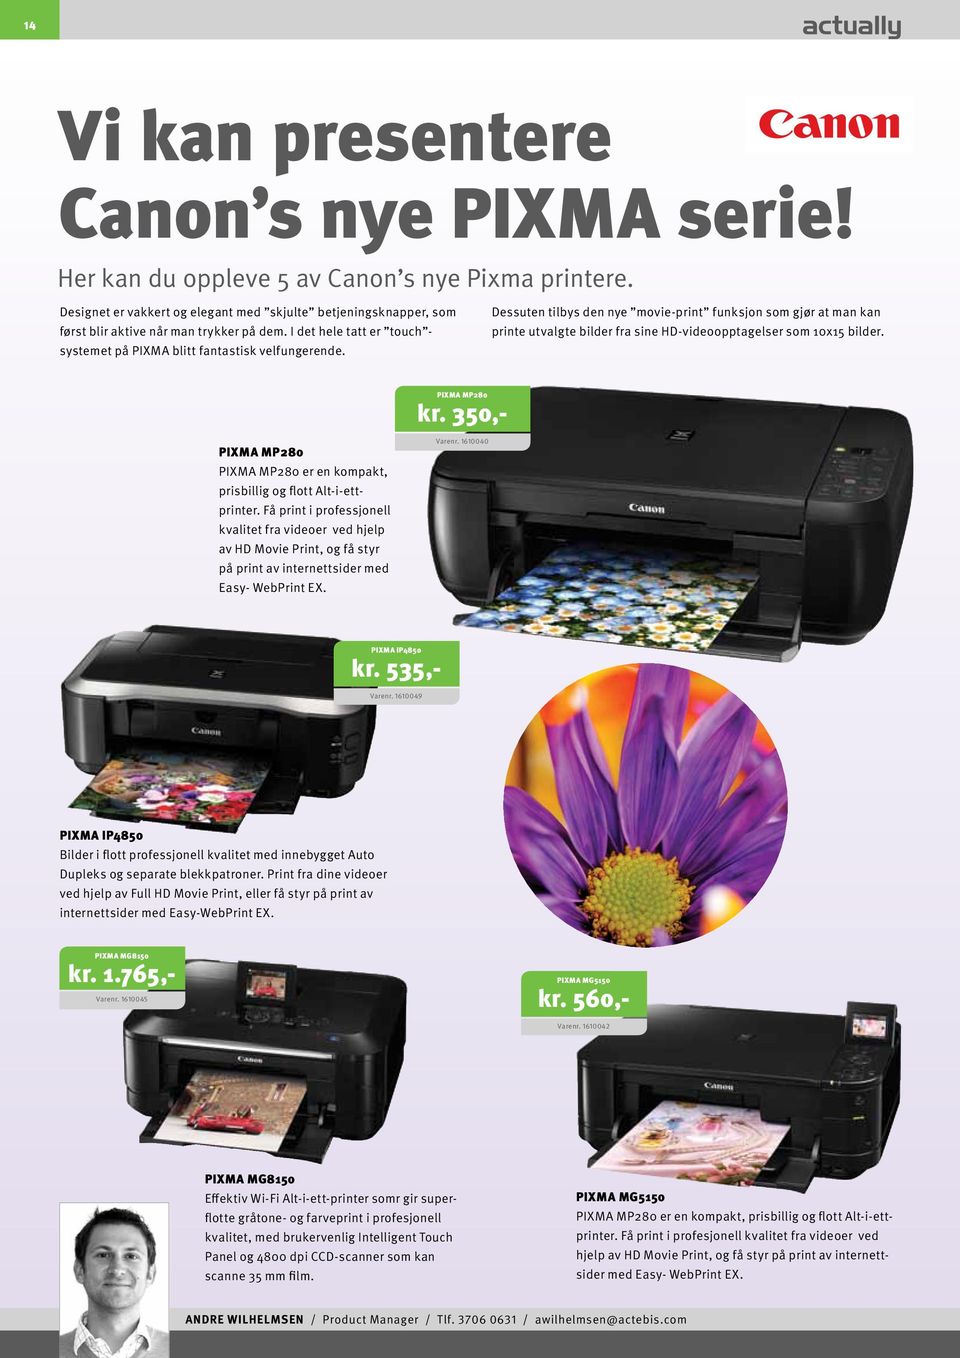 Dessuten tilbys den nye movie-print funksjon som gjør at man kan printe utvalgte bilder fra sine HD-videoopptagelser som 10x15 bilder. PIXMA MP280 kr.